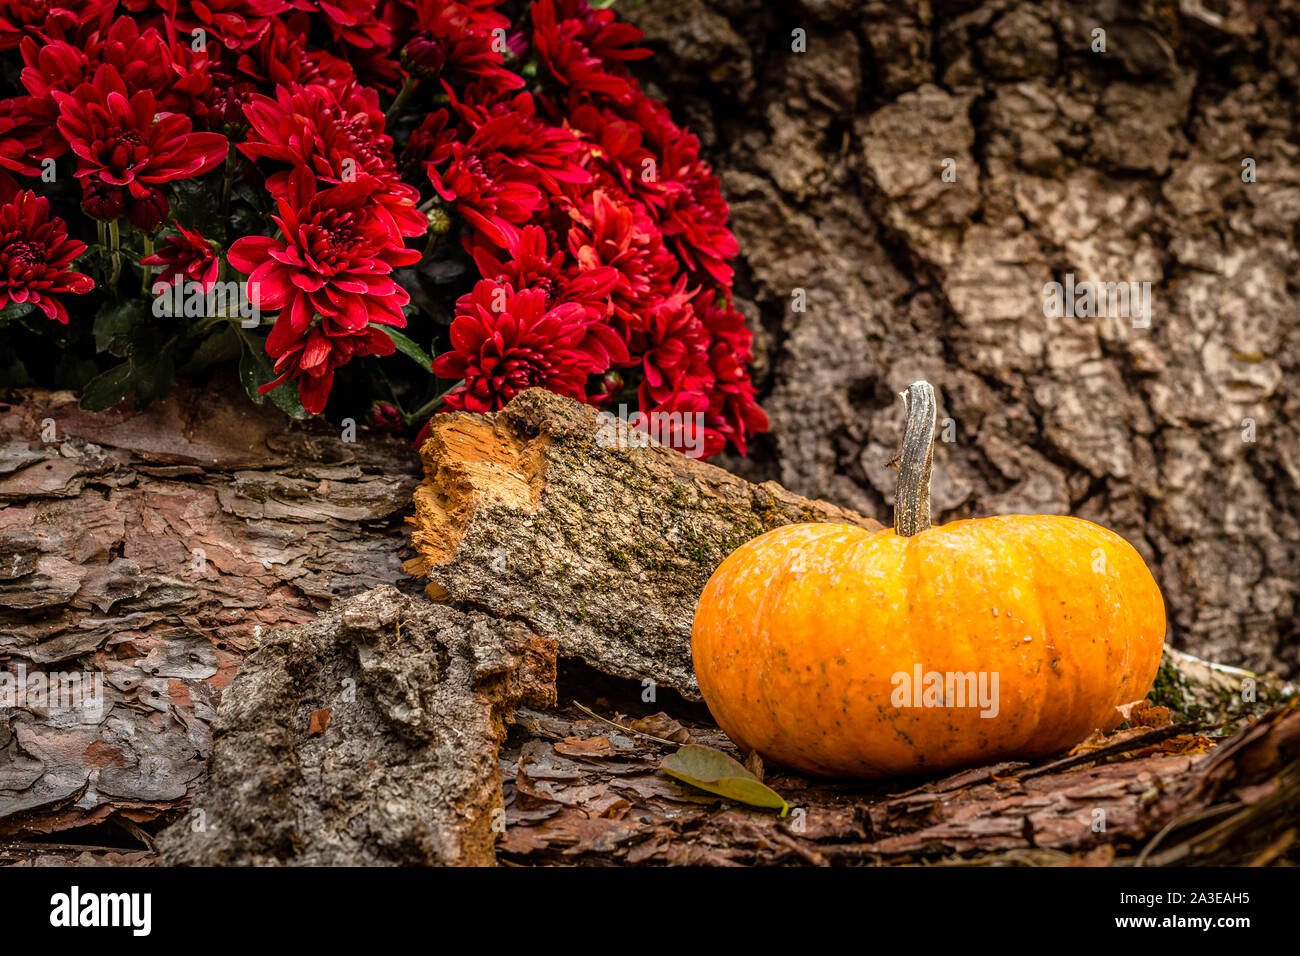 Nature morte für Halloween Kürbis und schöne rote Dahlie Blumen. Stockfoto